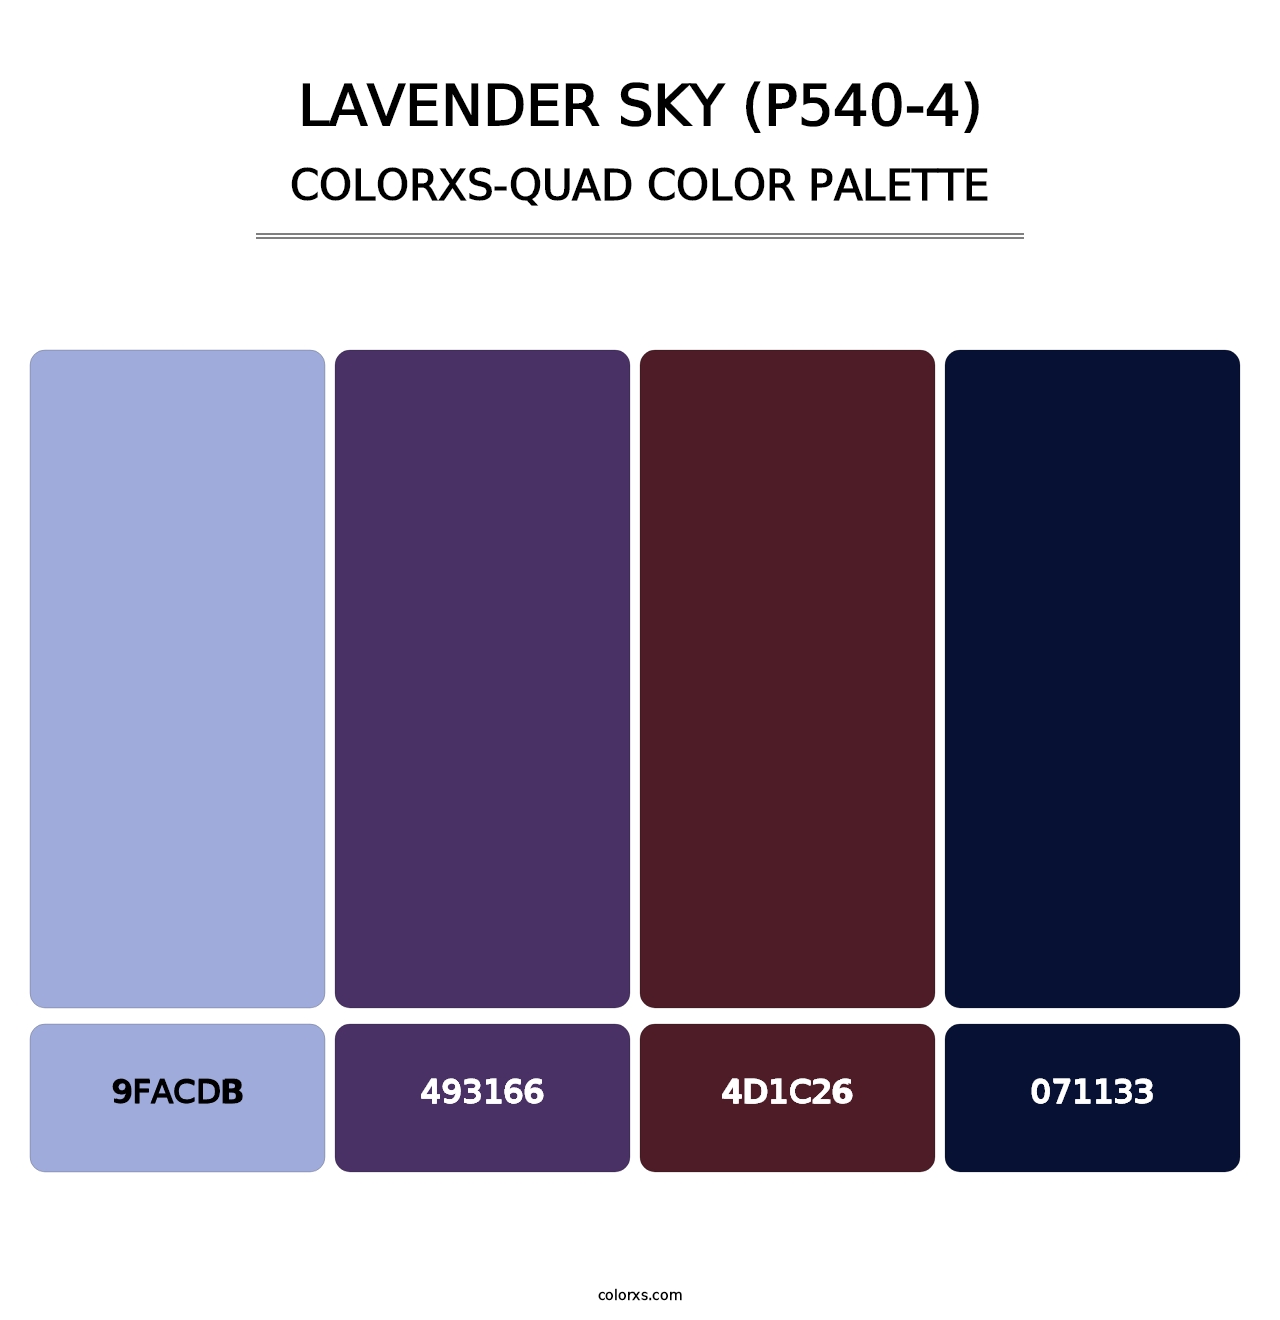 Lavender Sky (P540-4) - Colorxs Quad Palette